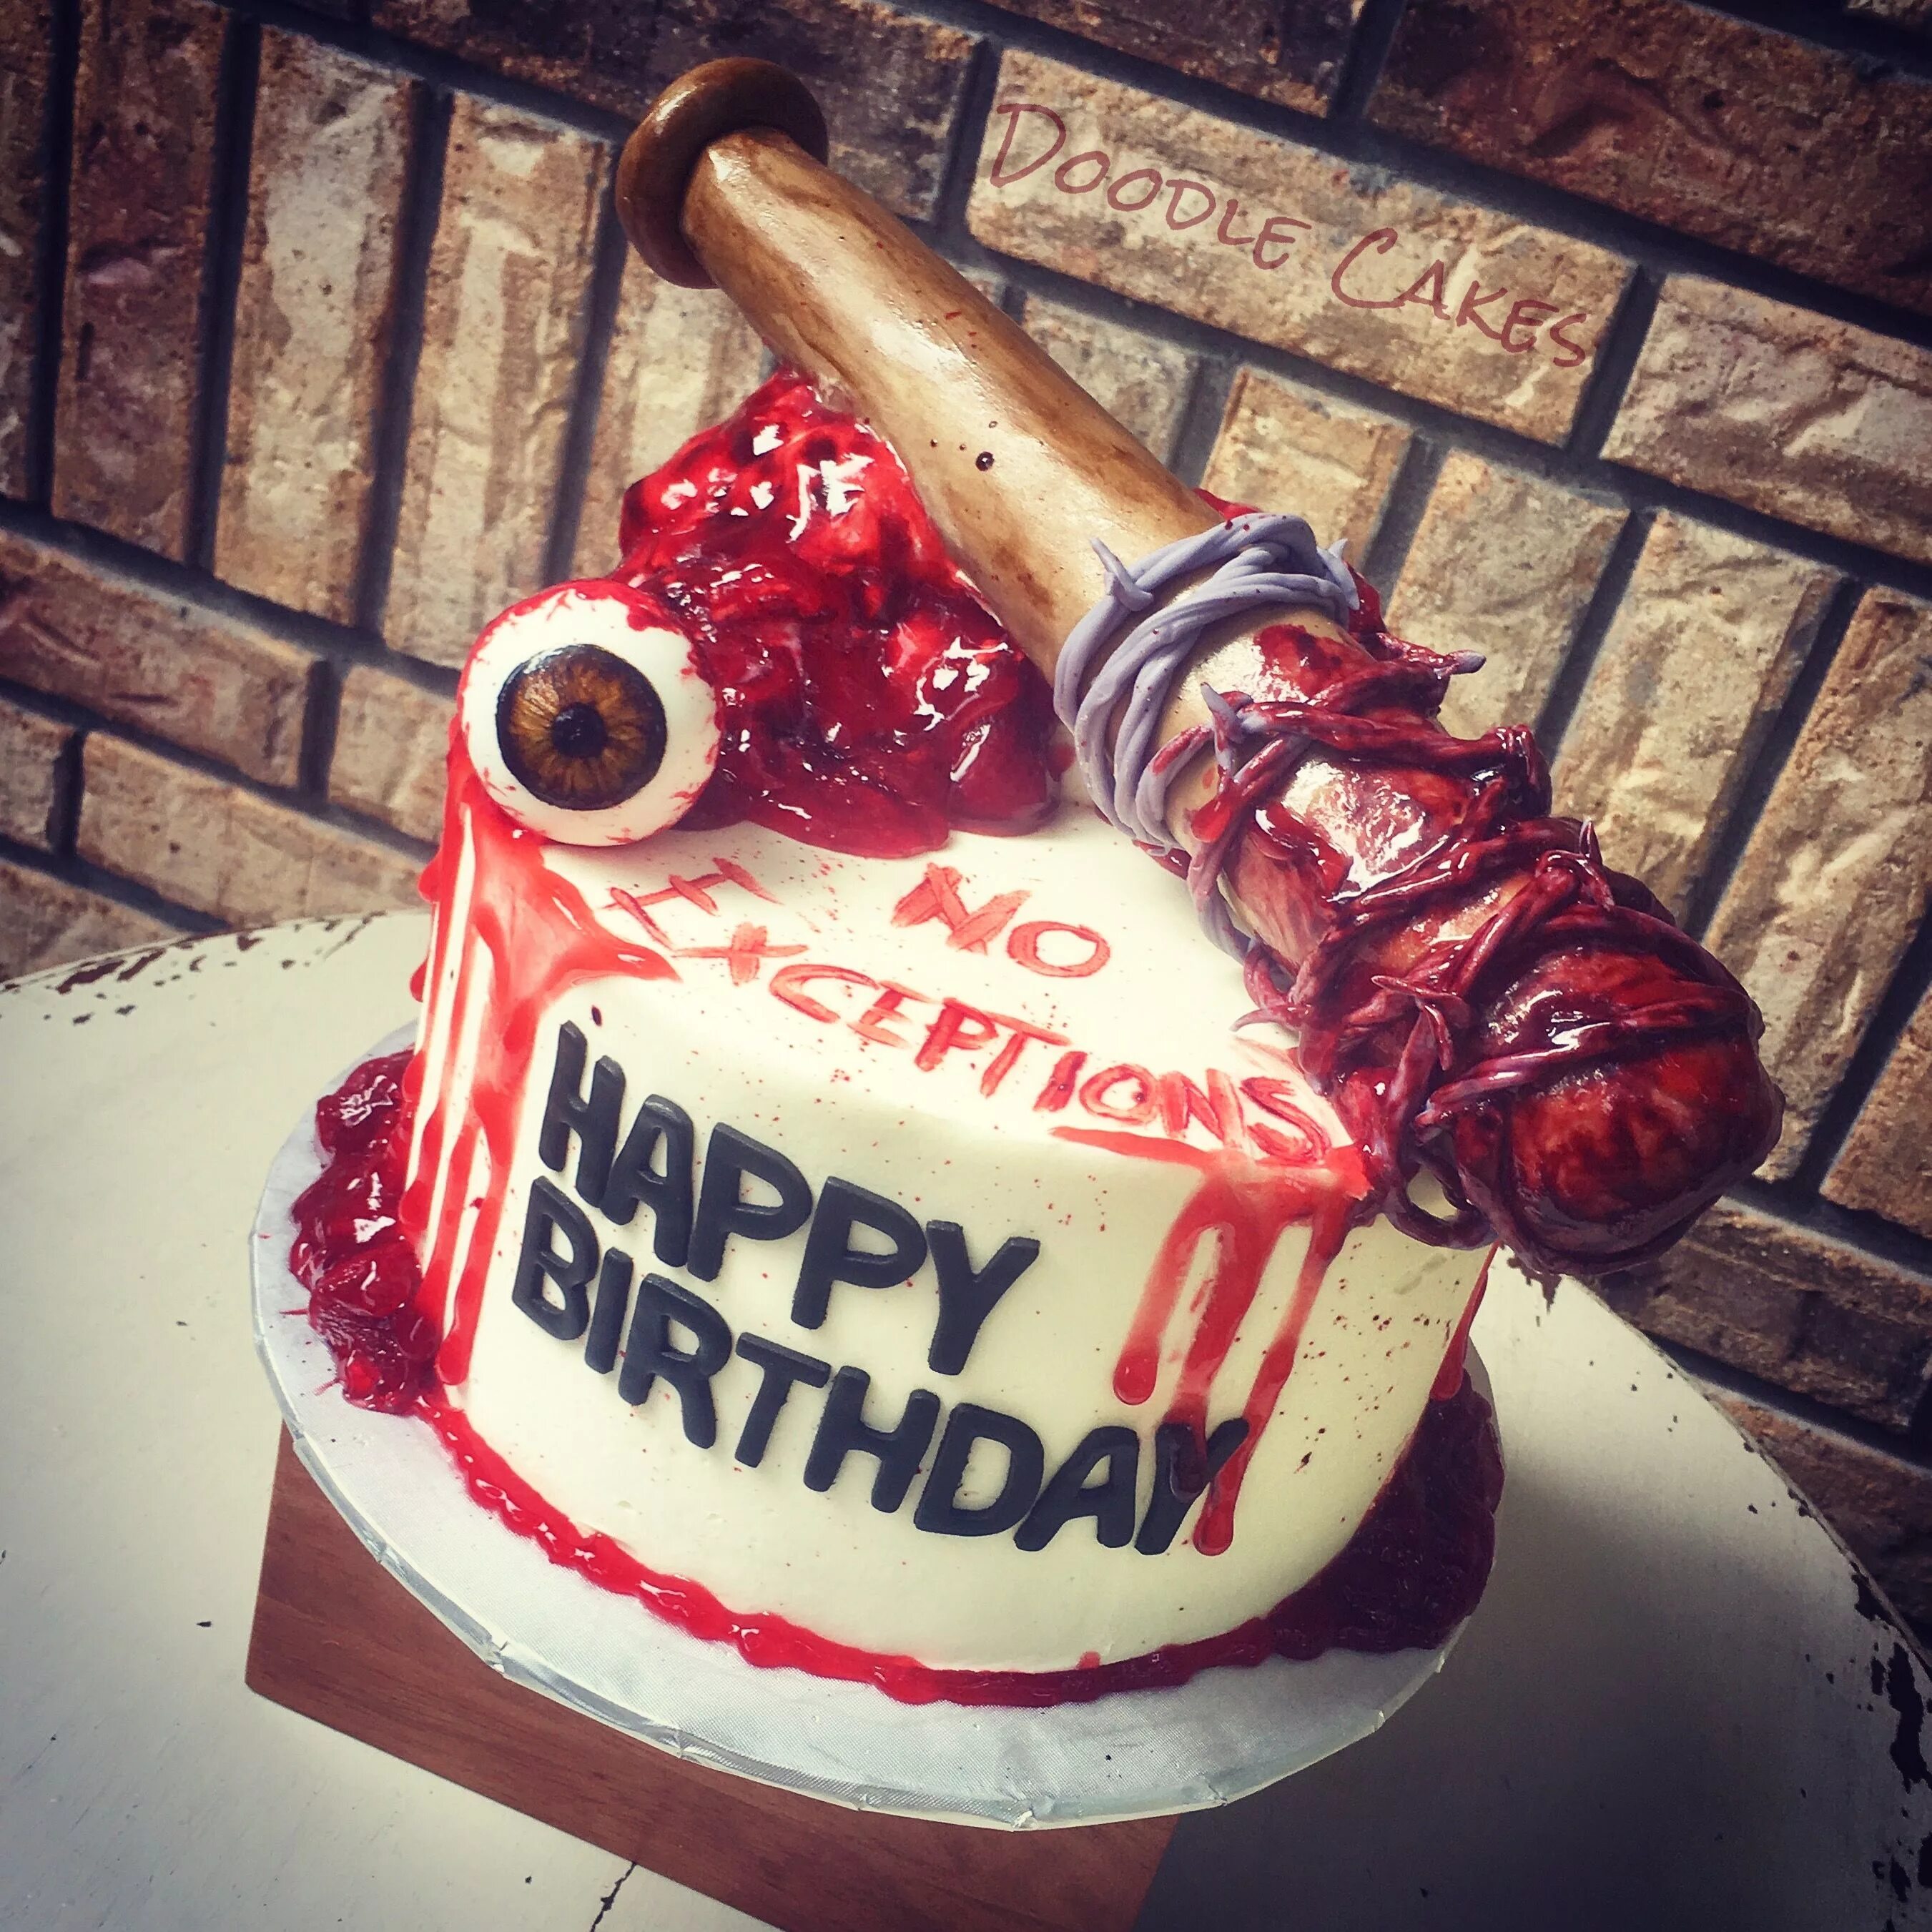 My good cake. Страшный торт на день рождения. С днем рождения в стиле хоррор. Крутые торты.